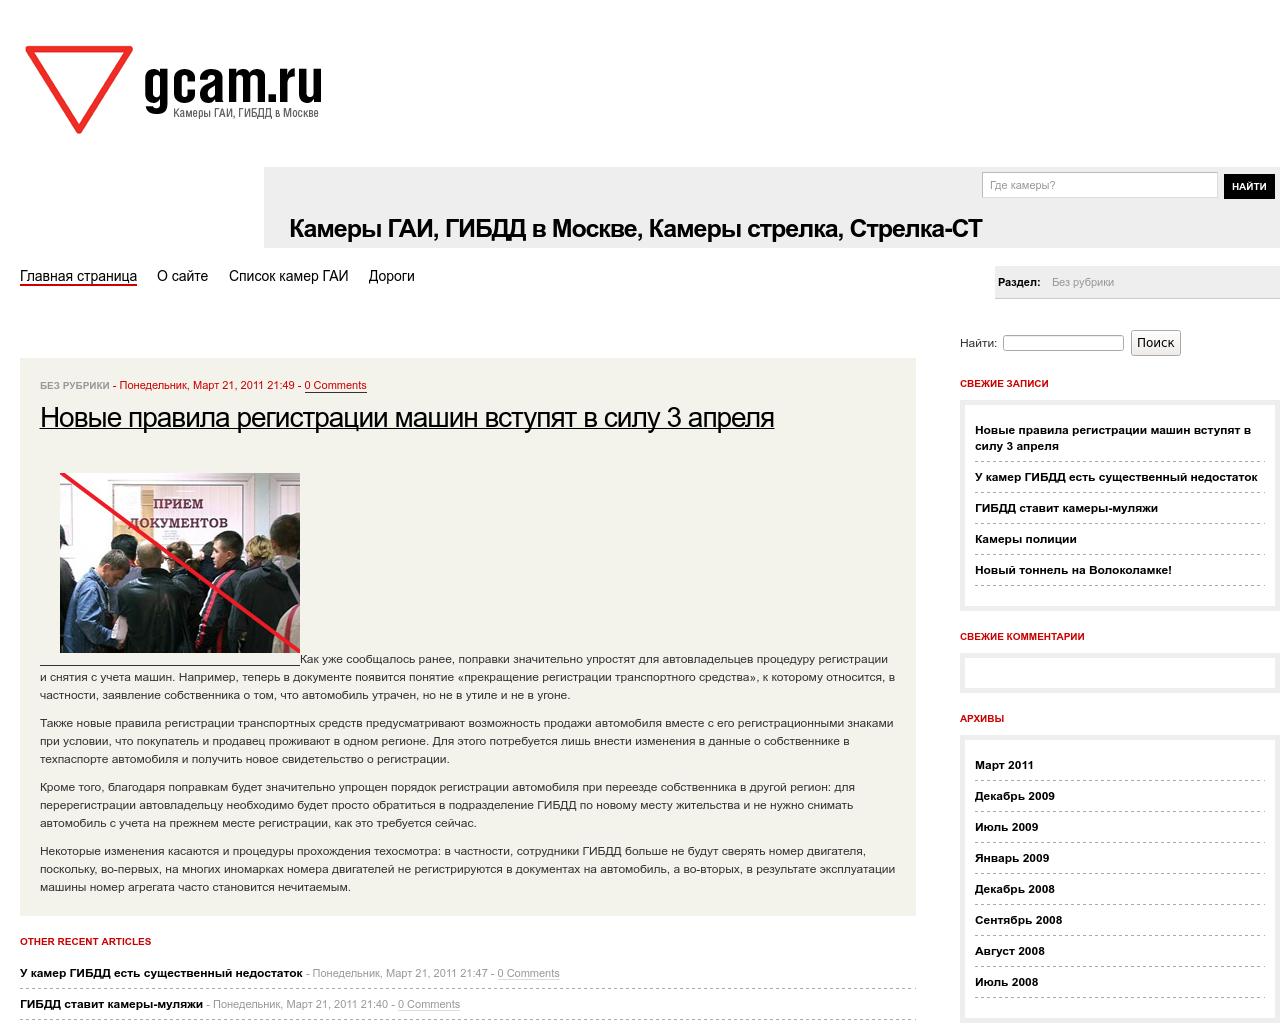 Изображение сайта gcam.ru в разрешении 1280x1024